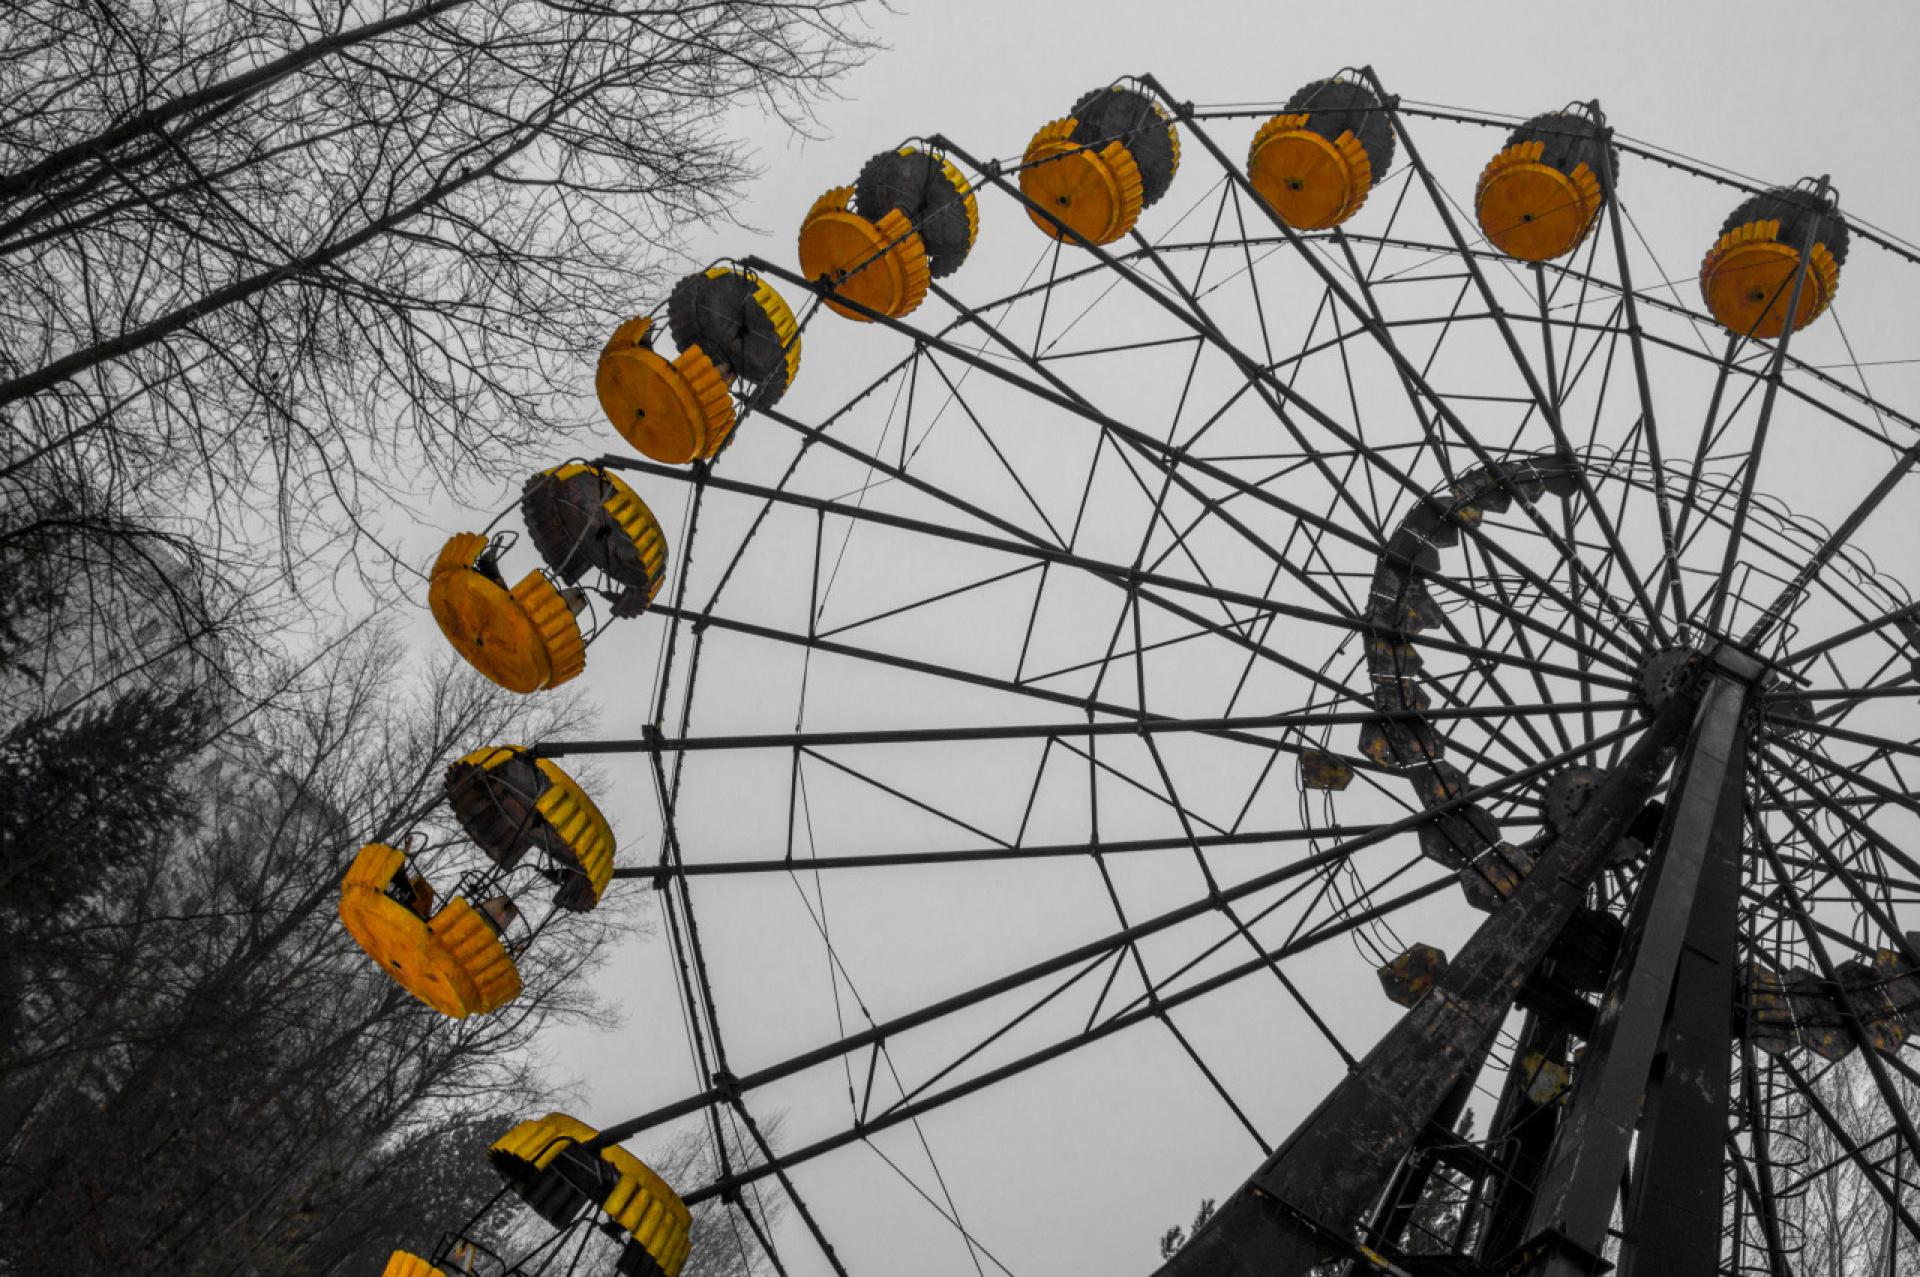 The ghostly ferris wheel in Pripyat.